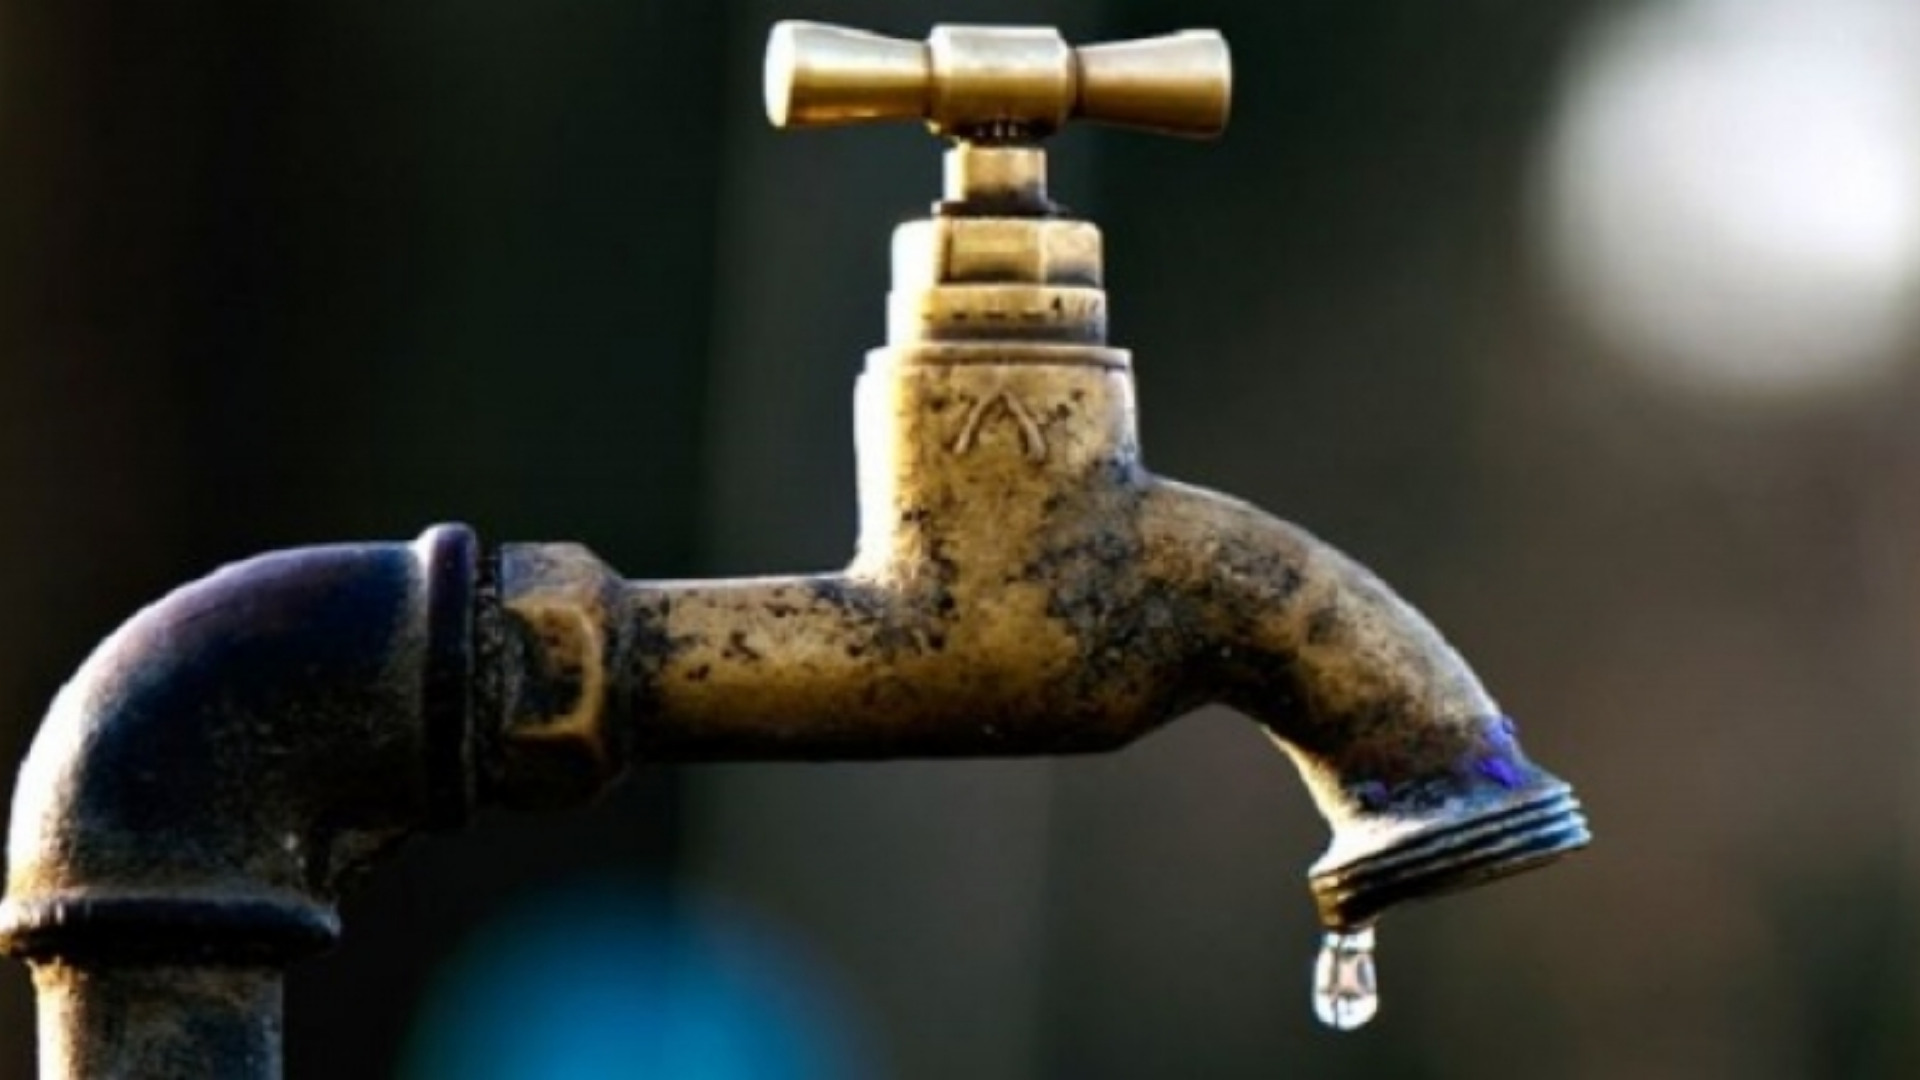 Crisi idrica, il Comune di Ascoli allerta le Forze dell’Ordine: “Vigilare su uso corretto dell’acqua”